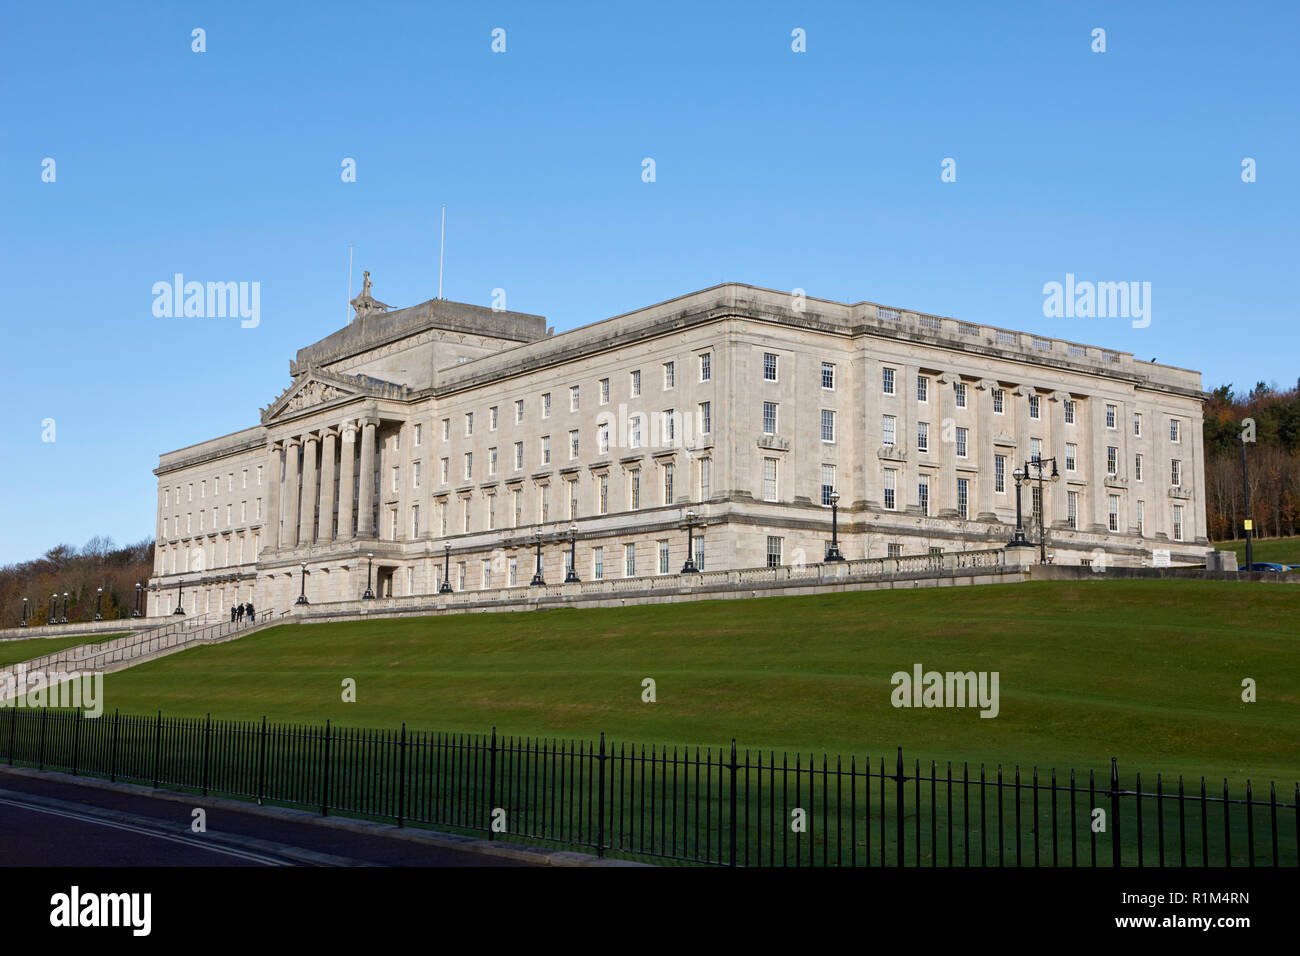 Gli edifici del Parlamento stormont belfast Irlanda del Nord Foto Stock